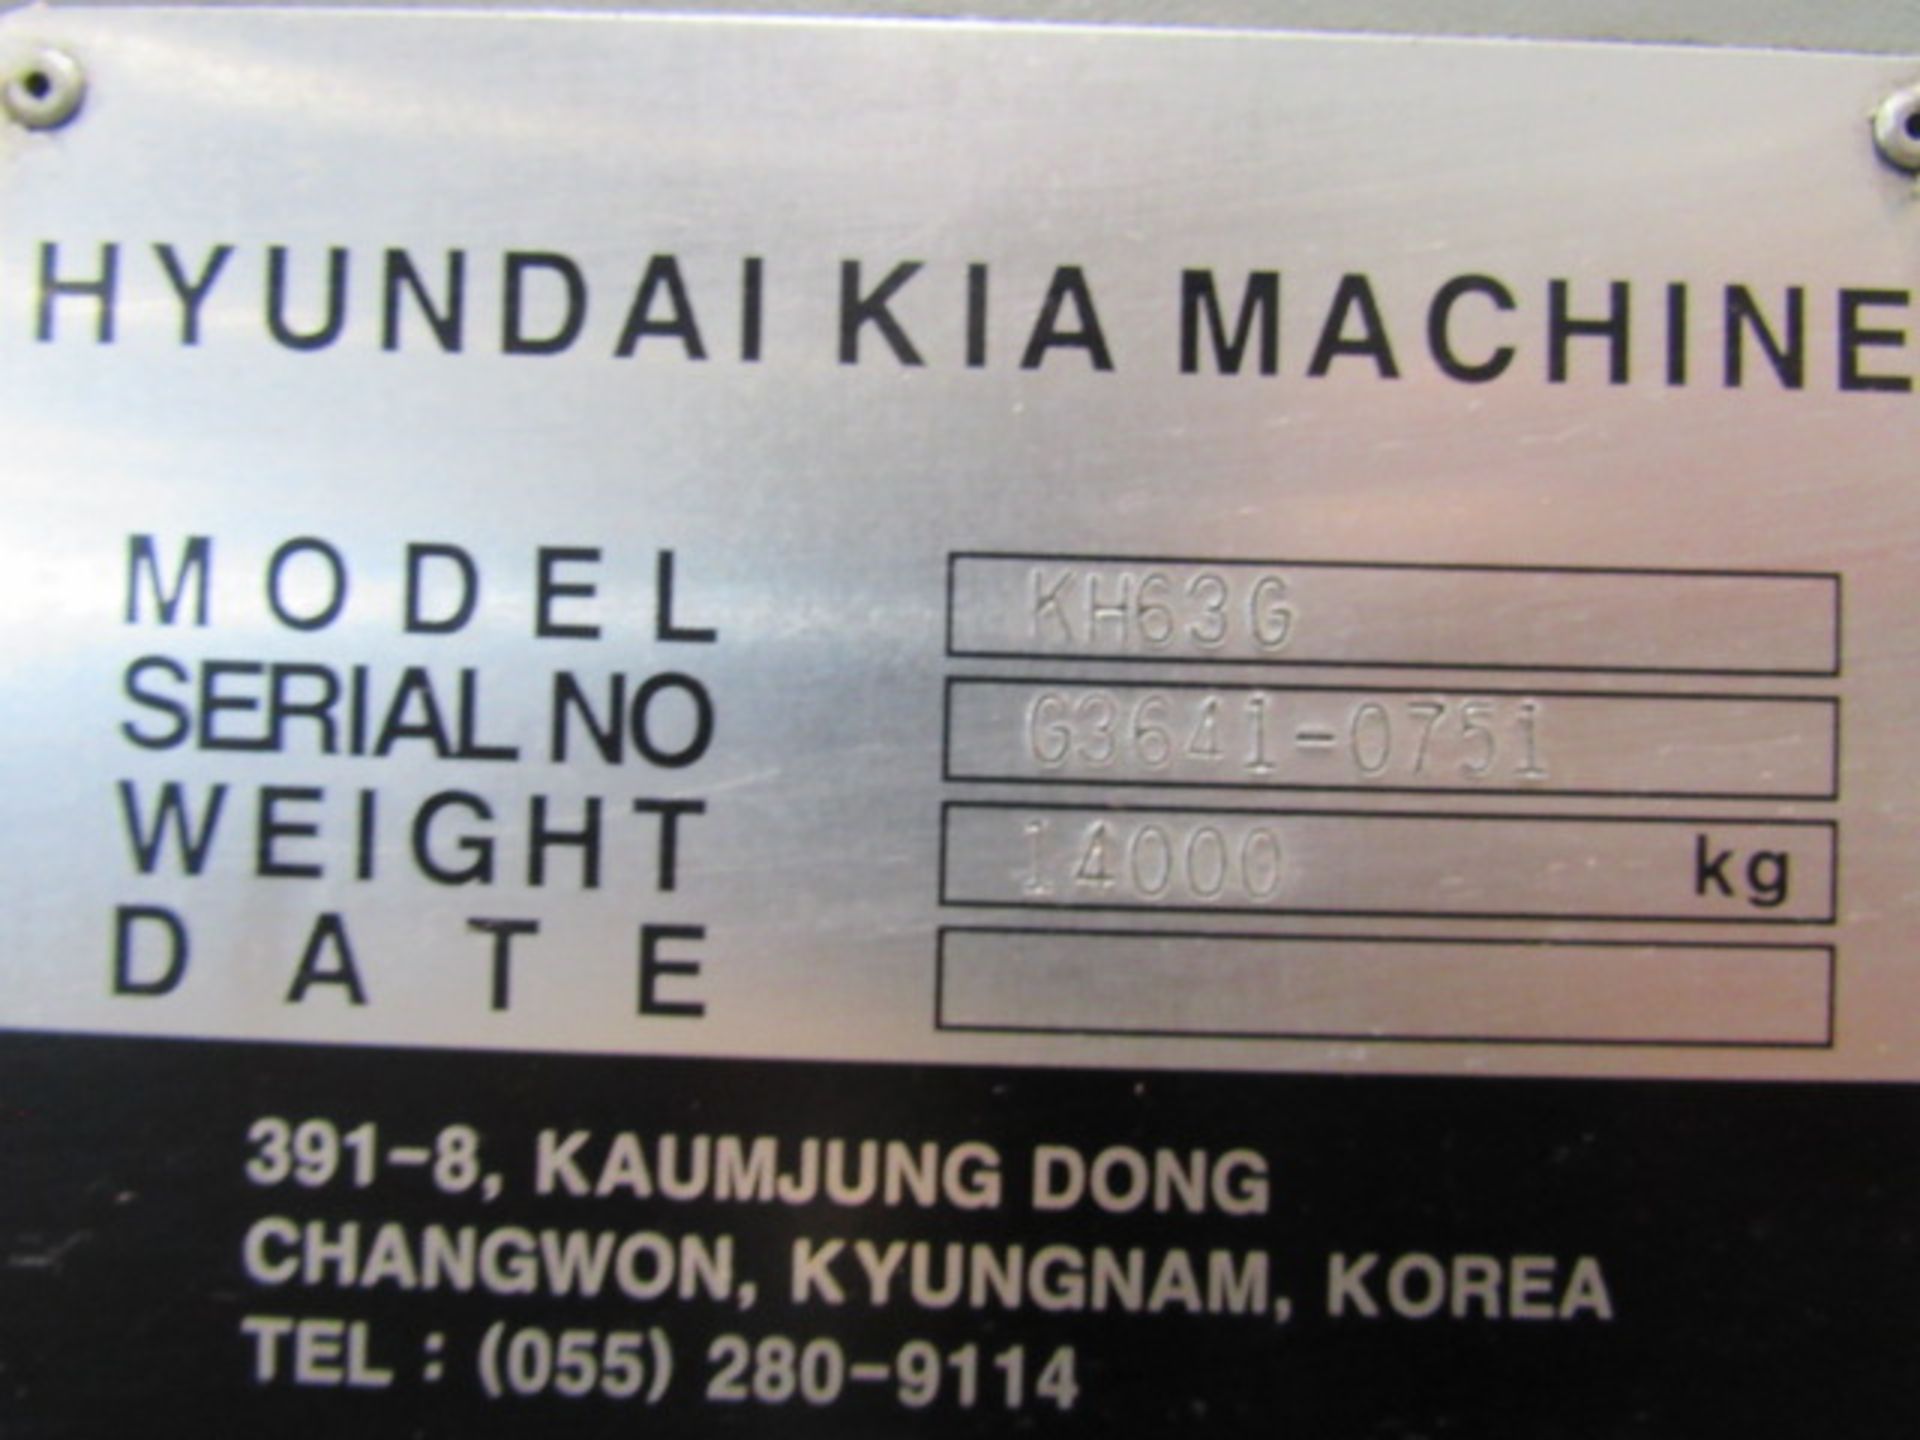 Hyundai Kia KH63G 4-Axis Horizontal Machining Center - Image 13 of 13